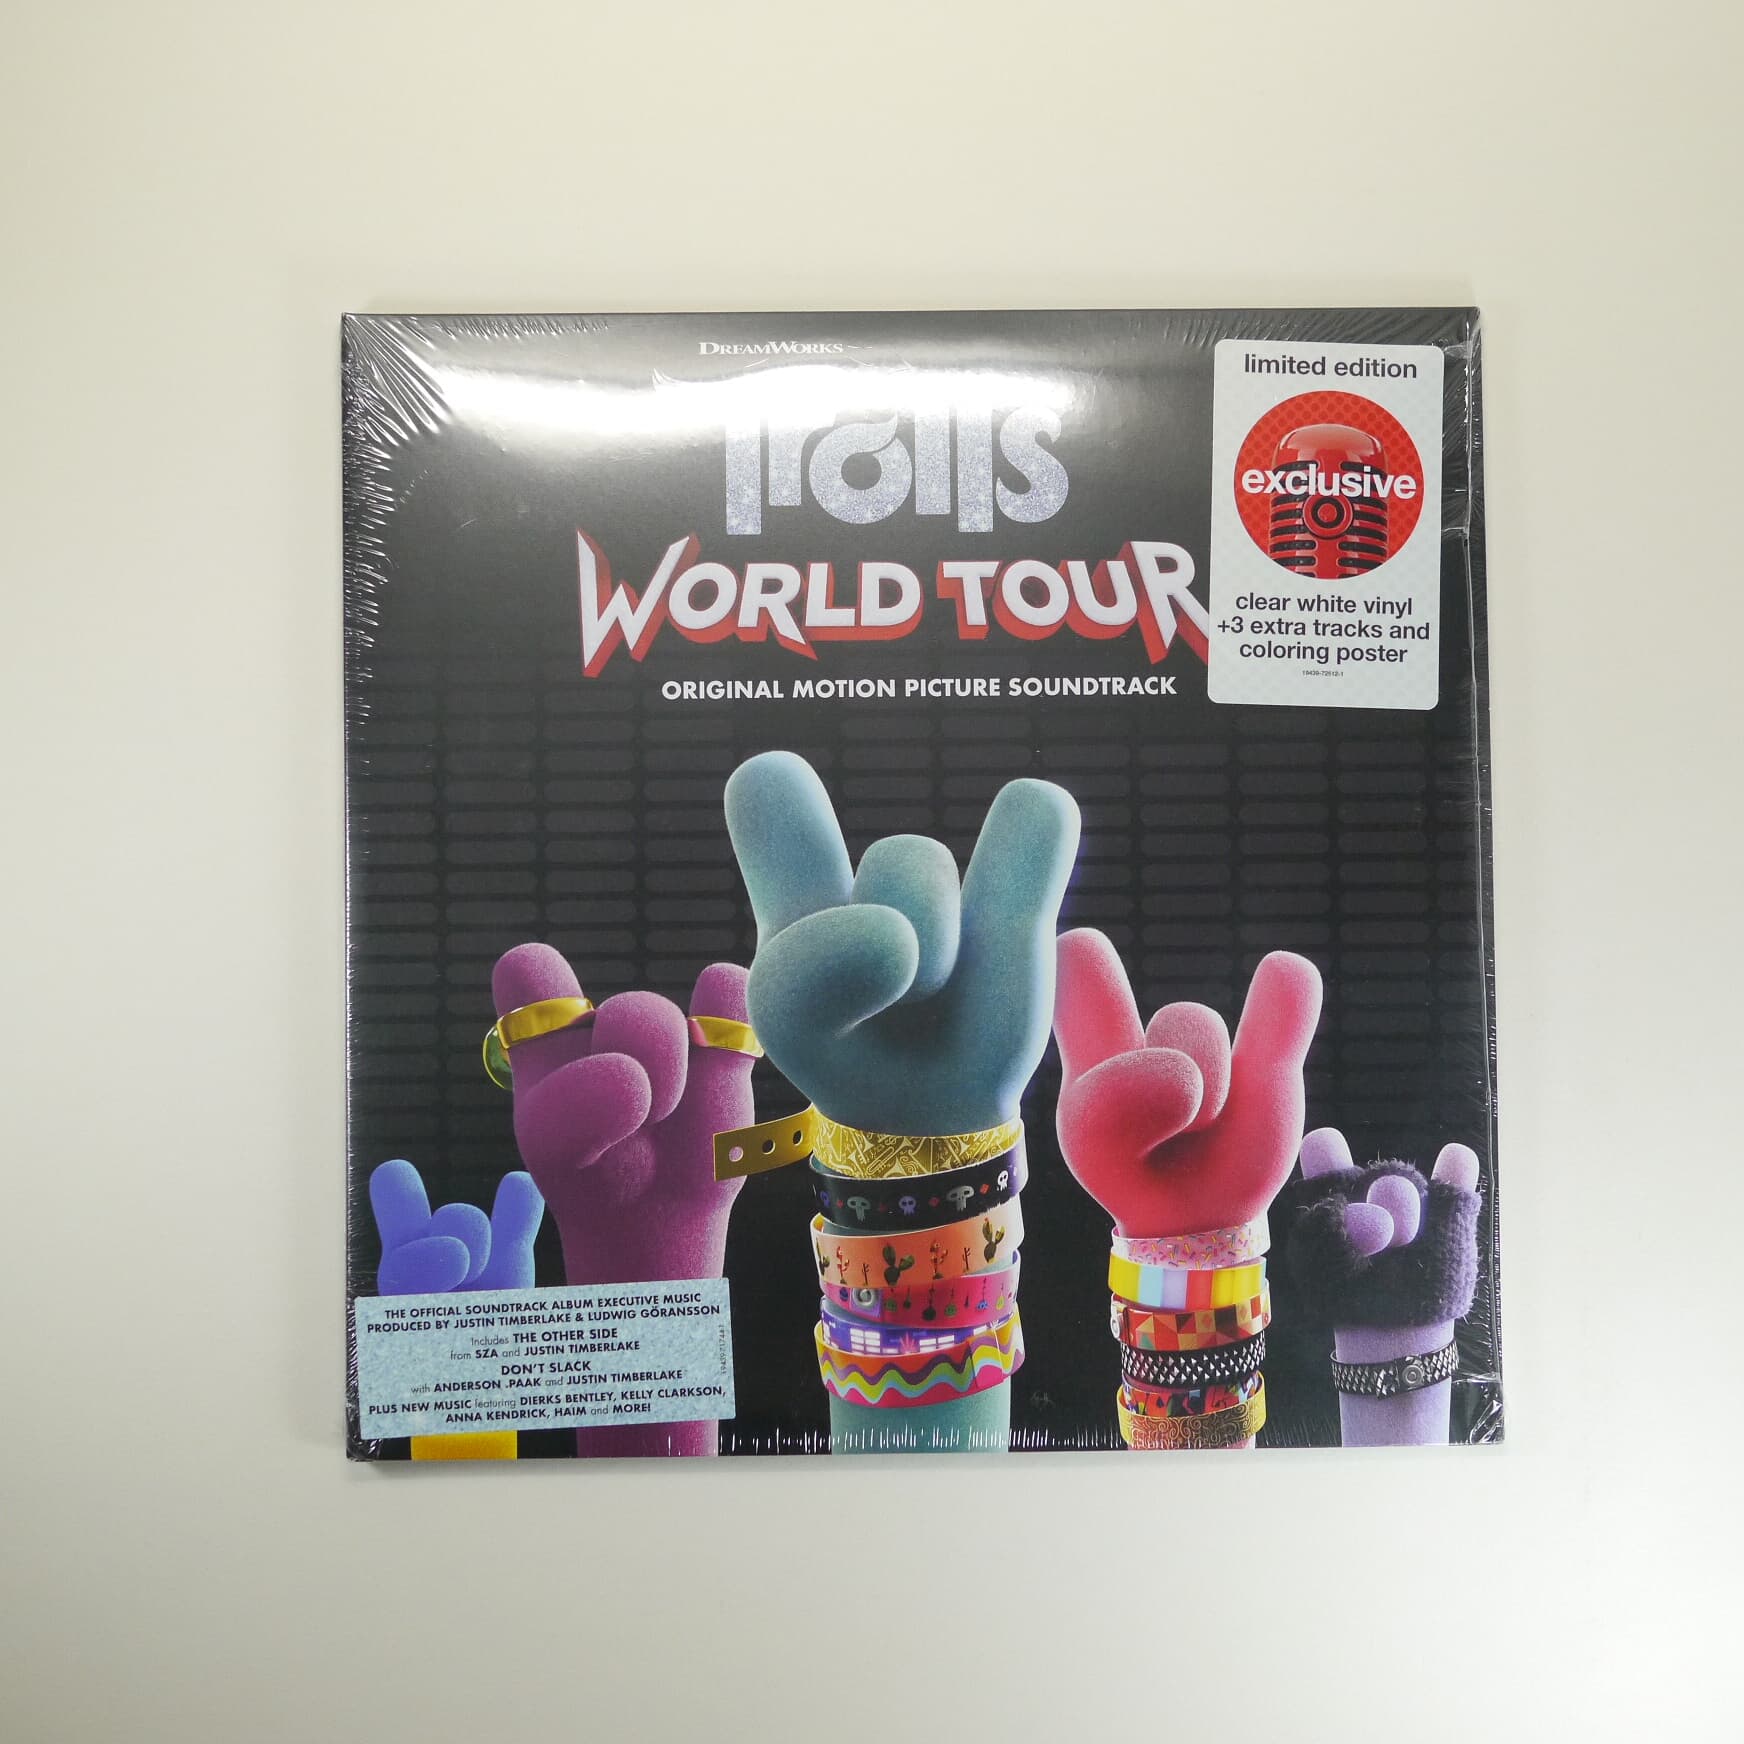 트롤: 월드 투어 영화음악 (Trolls World Tour  Original Motion Picture Soundtrack)